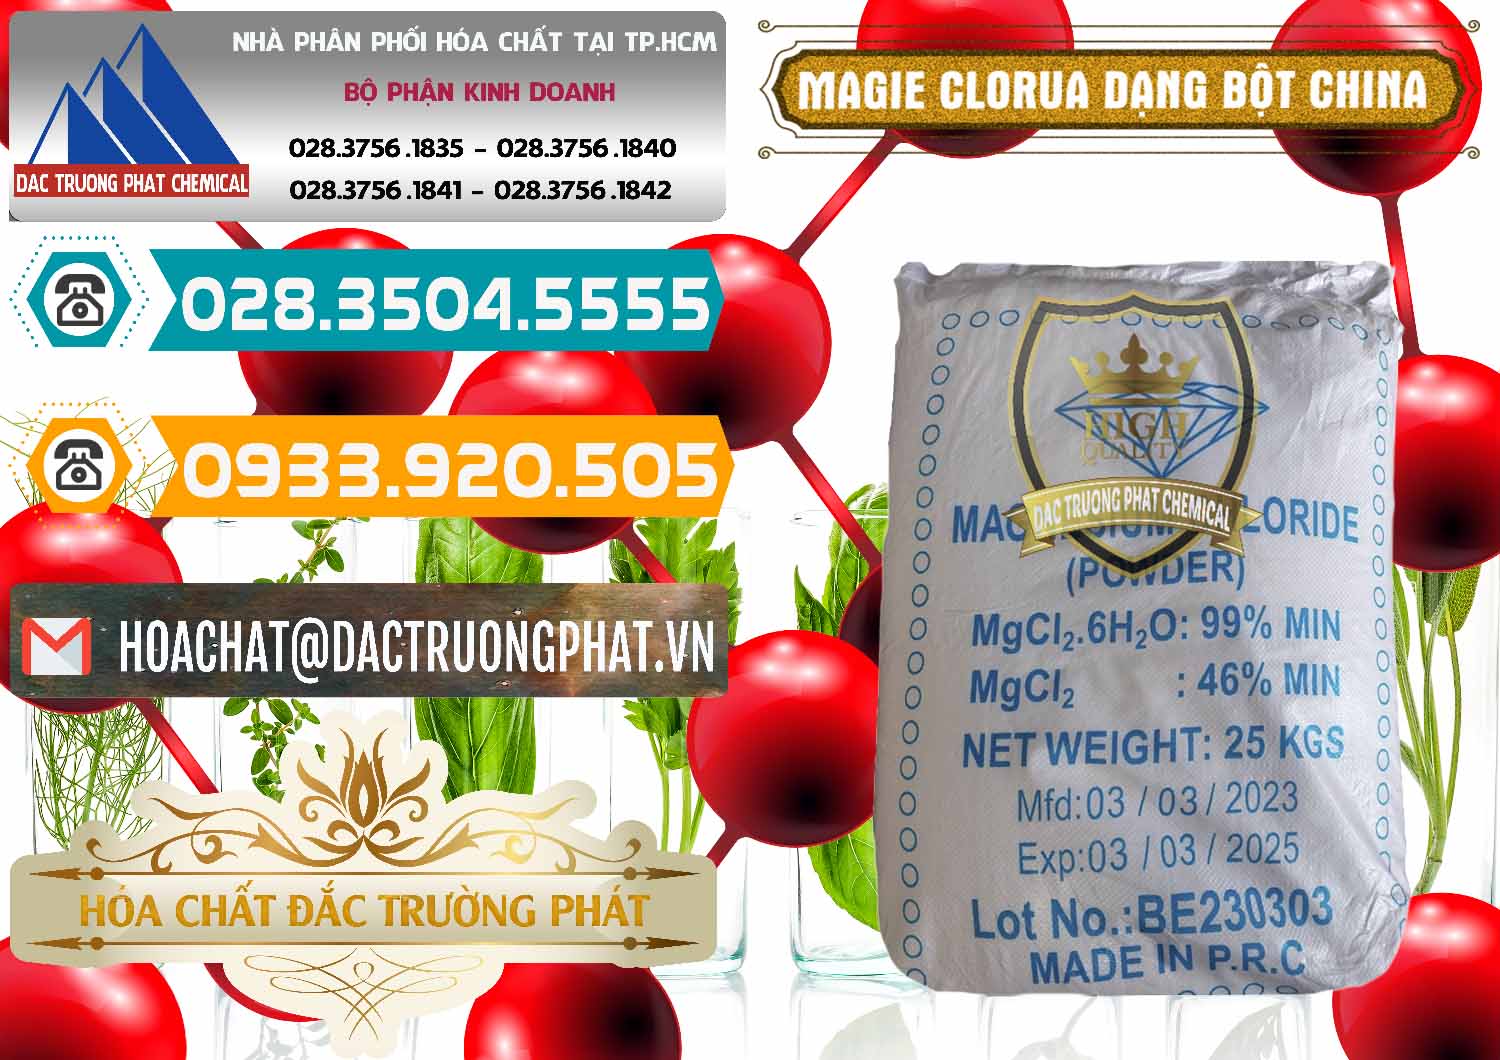 Cty chuyên bán - phân phối Magie Clorua – MGCL2 96% Dạng Bột Logo Kim Cương Trung Quốc China - 0387 - Đơn vị cung ứng - phân phối hóa chất tại TP.HCM - congtyhoachat.vn